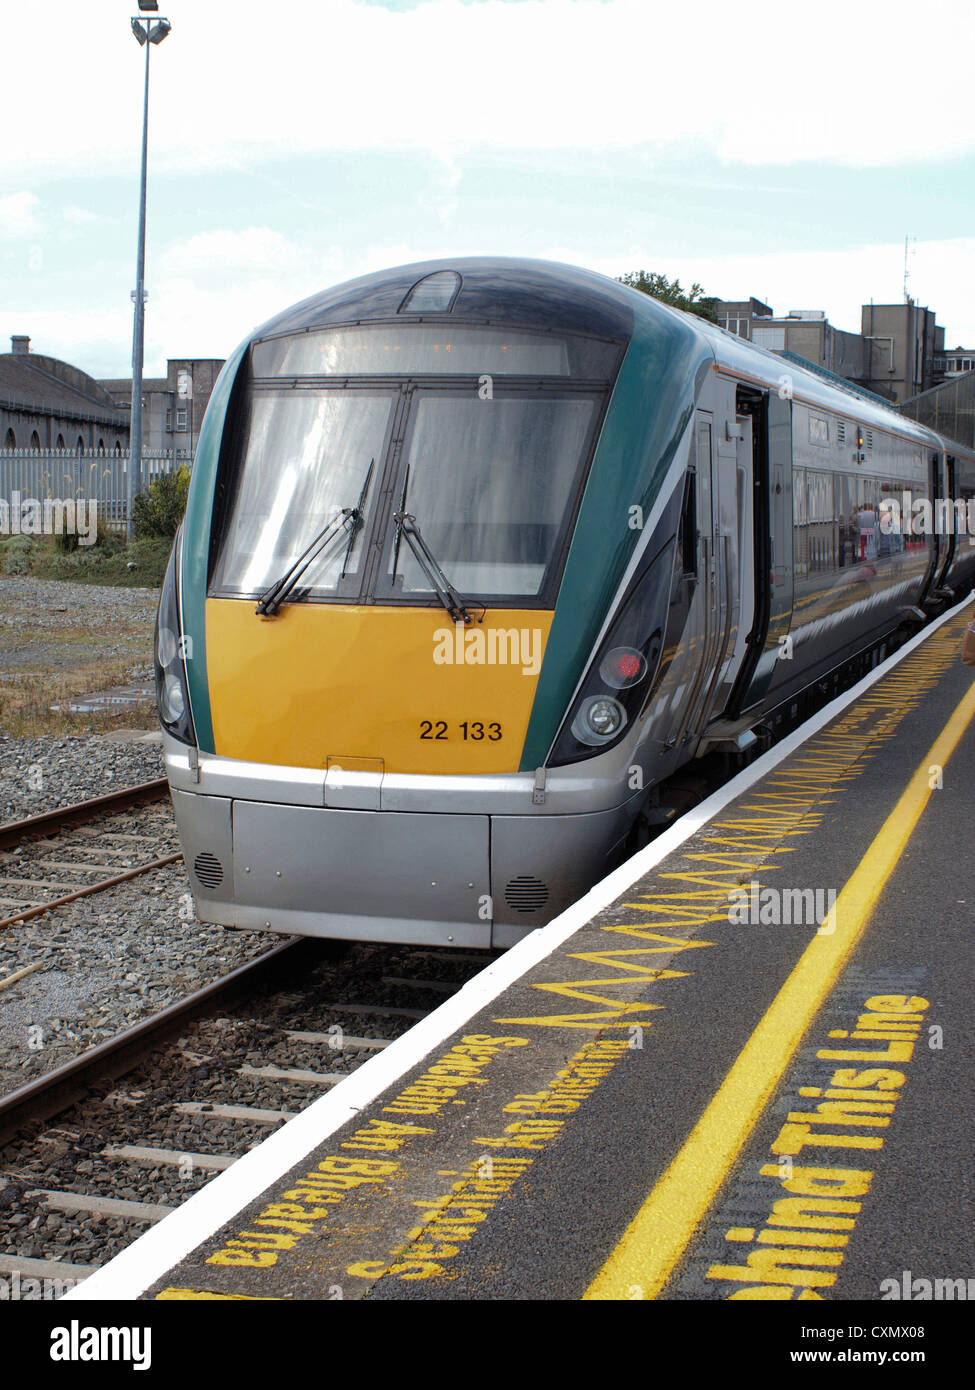 (Larnrod Eireann) Irische Schienen 22000 Klasse 'I.C.R' Diesel Triebzug Intercity-Wagen in West Irland Galway Station. Stockfoto